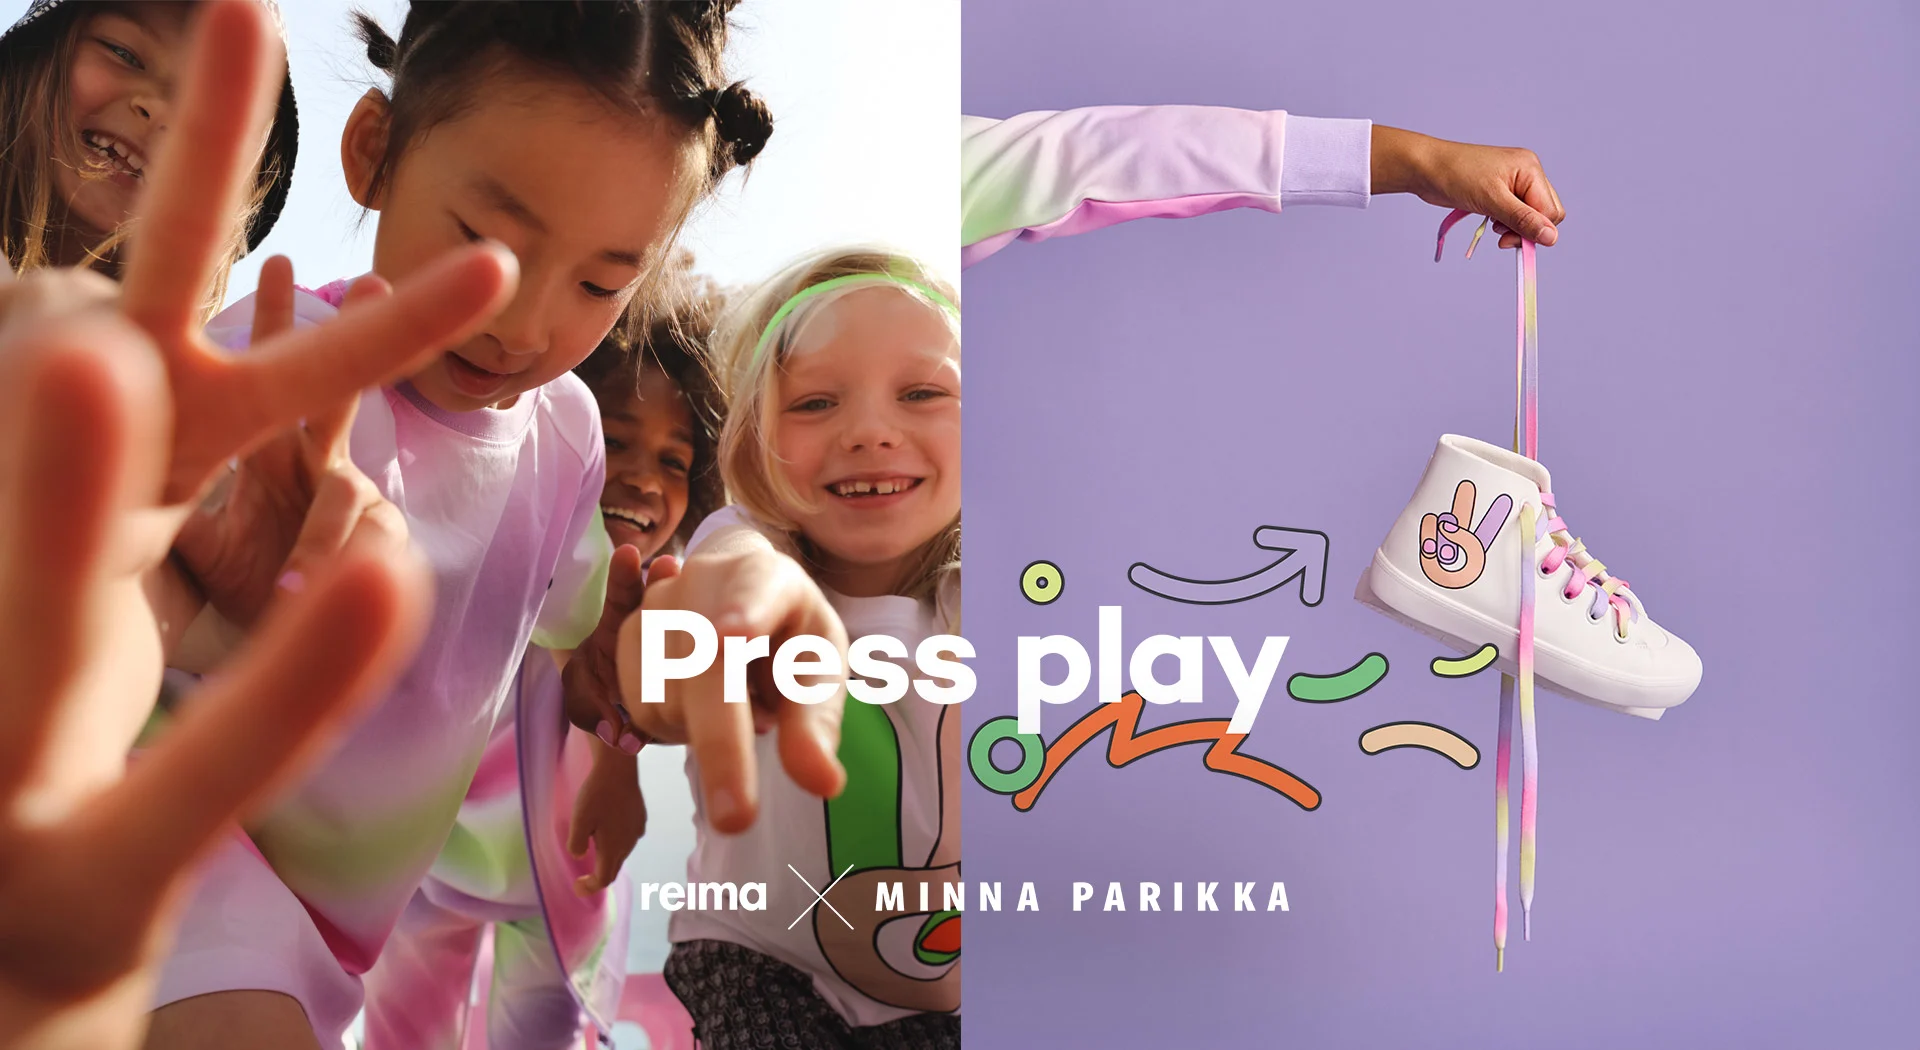 REIMA X MINNA PARIKKA - Press Play